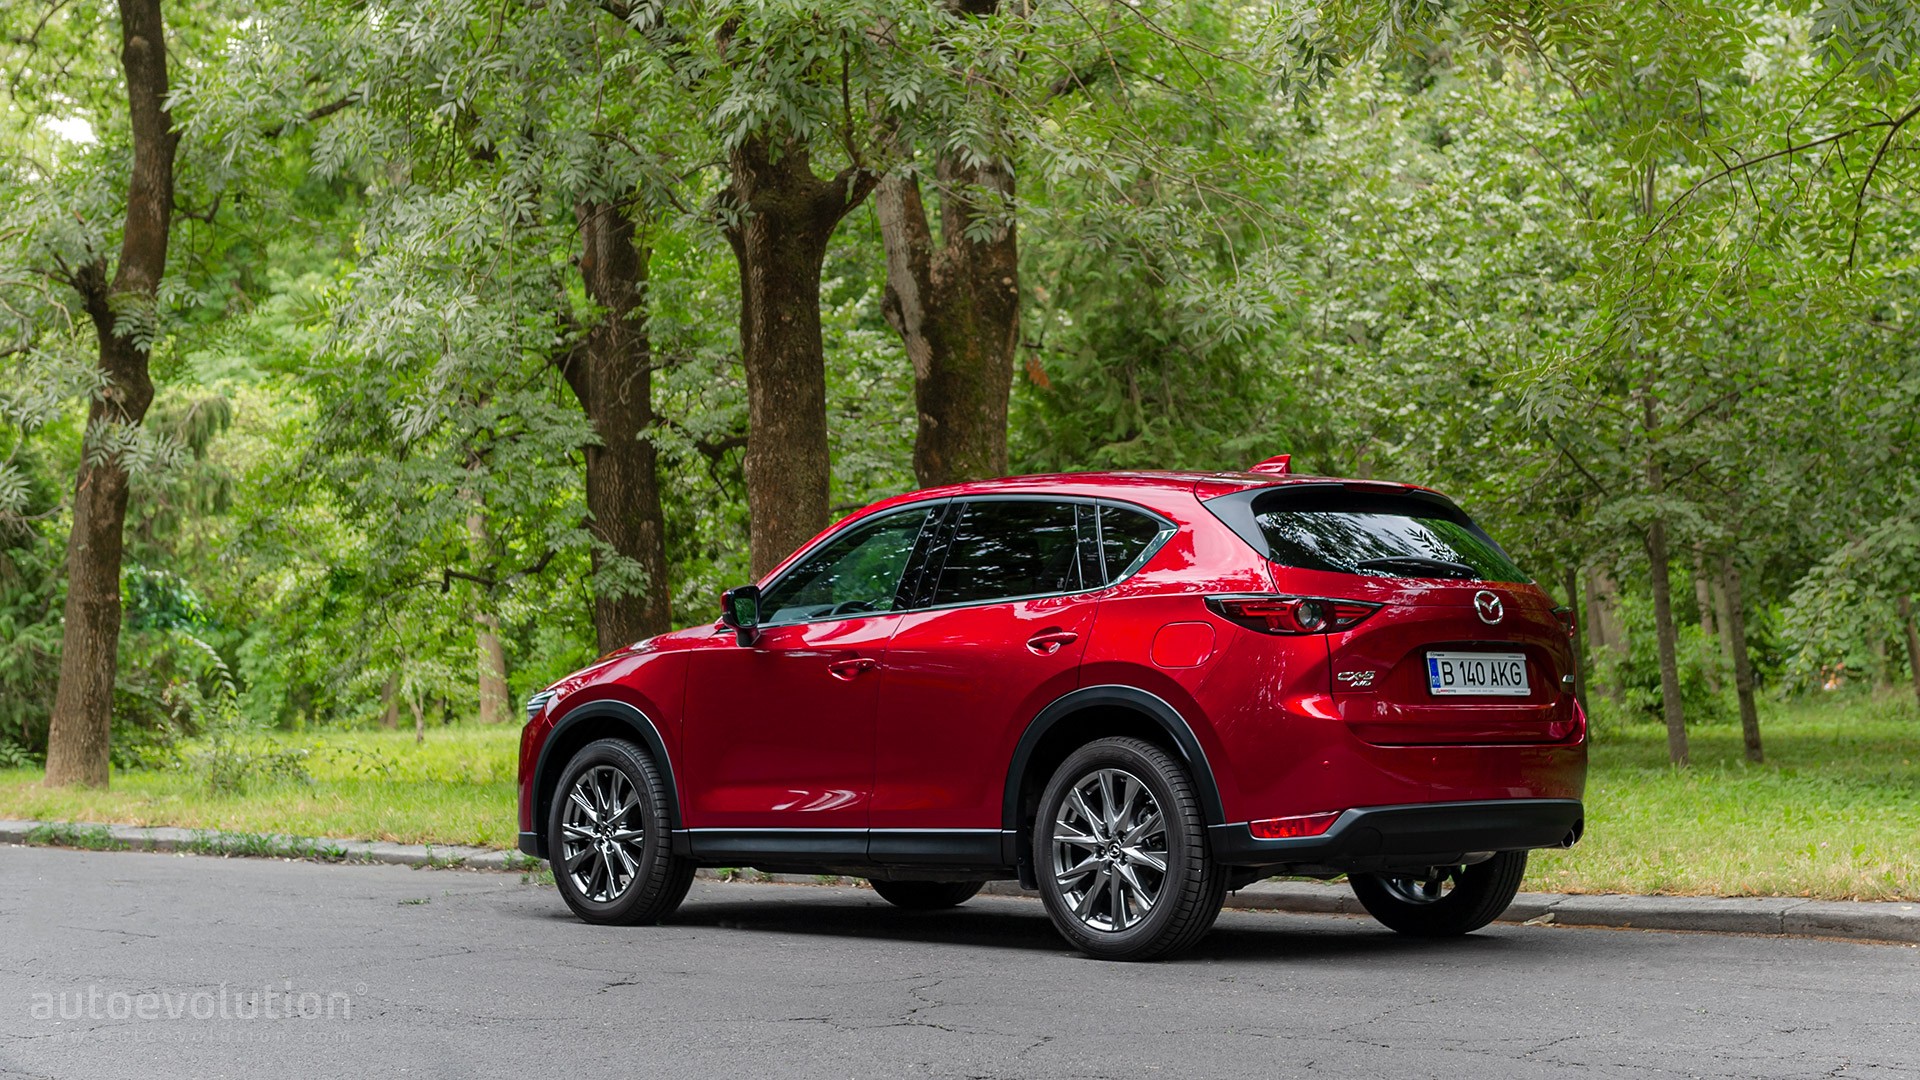 Mazda 5 - Consumer Reports